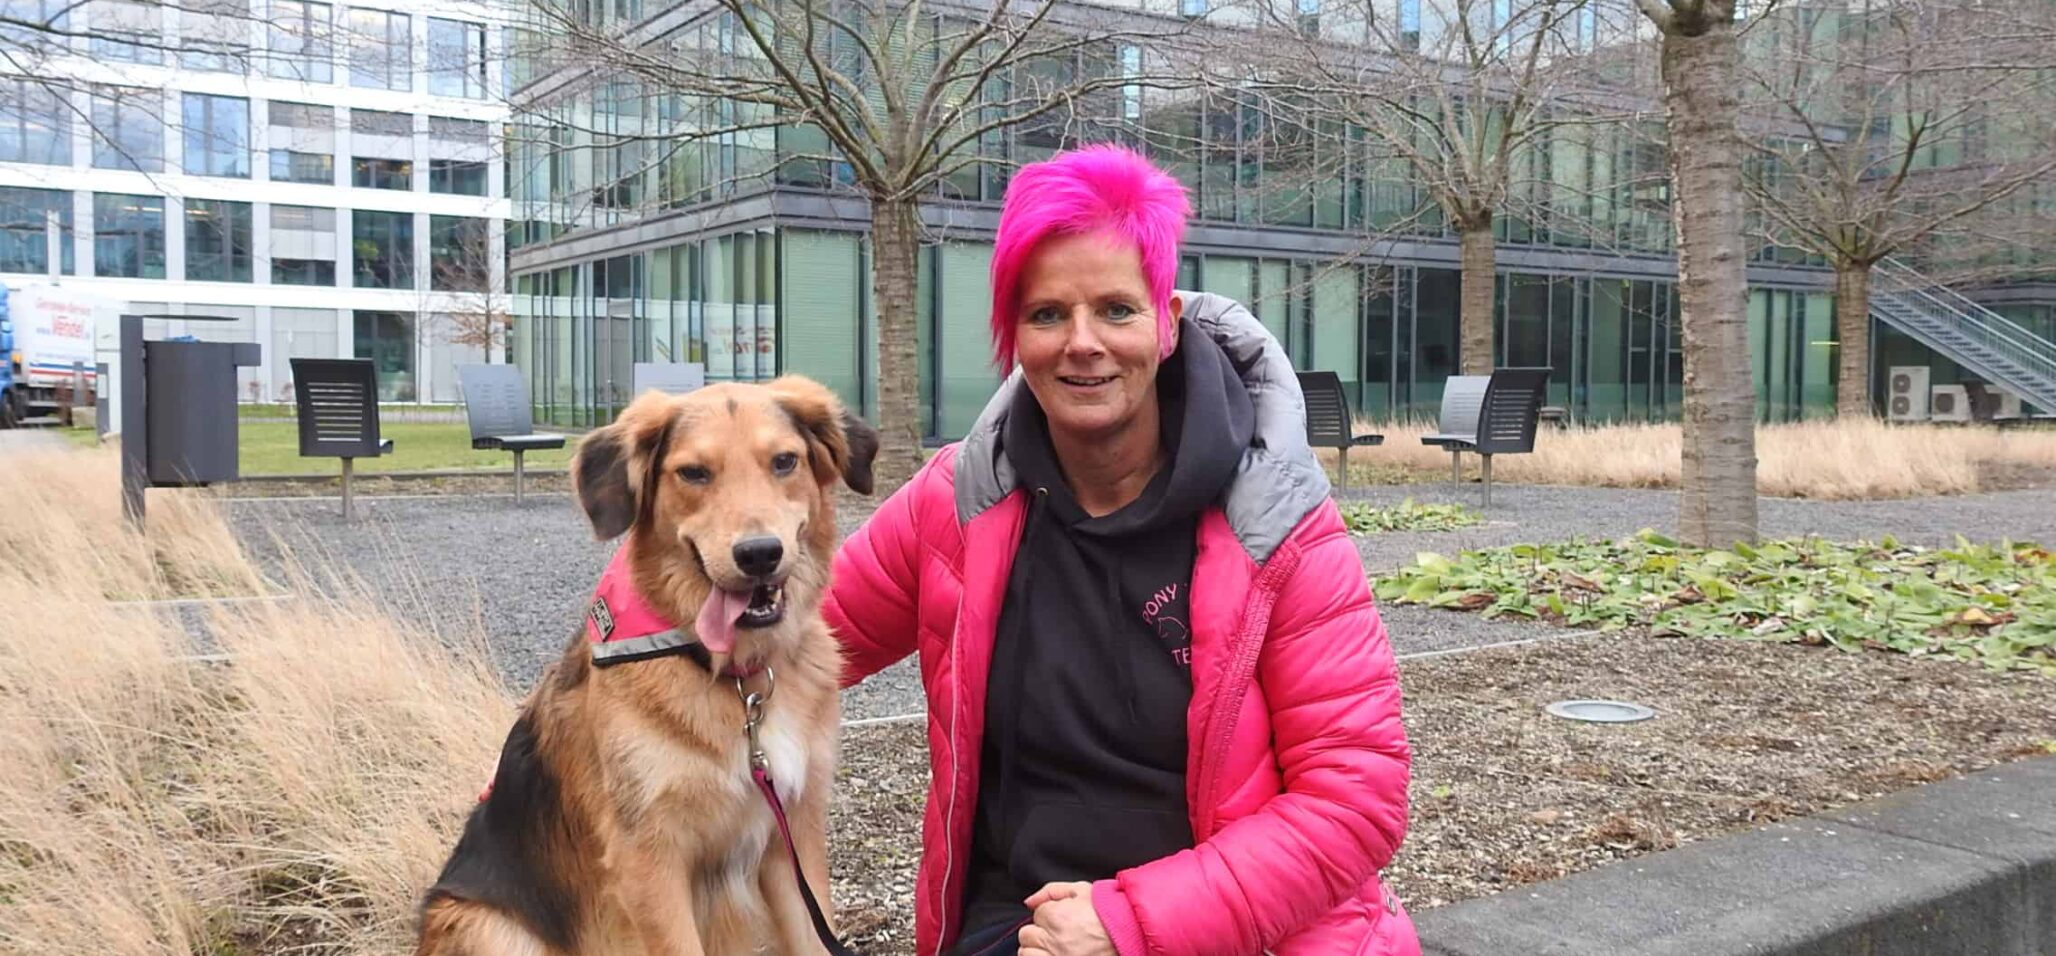 Ulrike Sänger, staatlich anerkannter Heilpädagogin mit jahrelanger Erfahrung in der tiergestützten Therapie, und Bo, ein freundlicher Begleithund